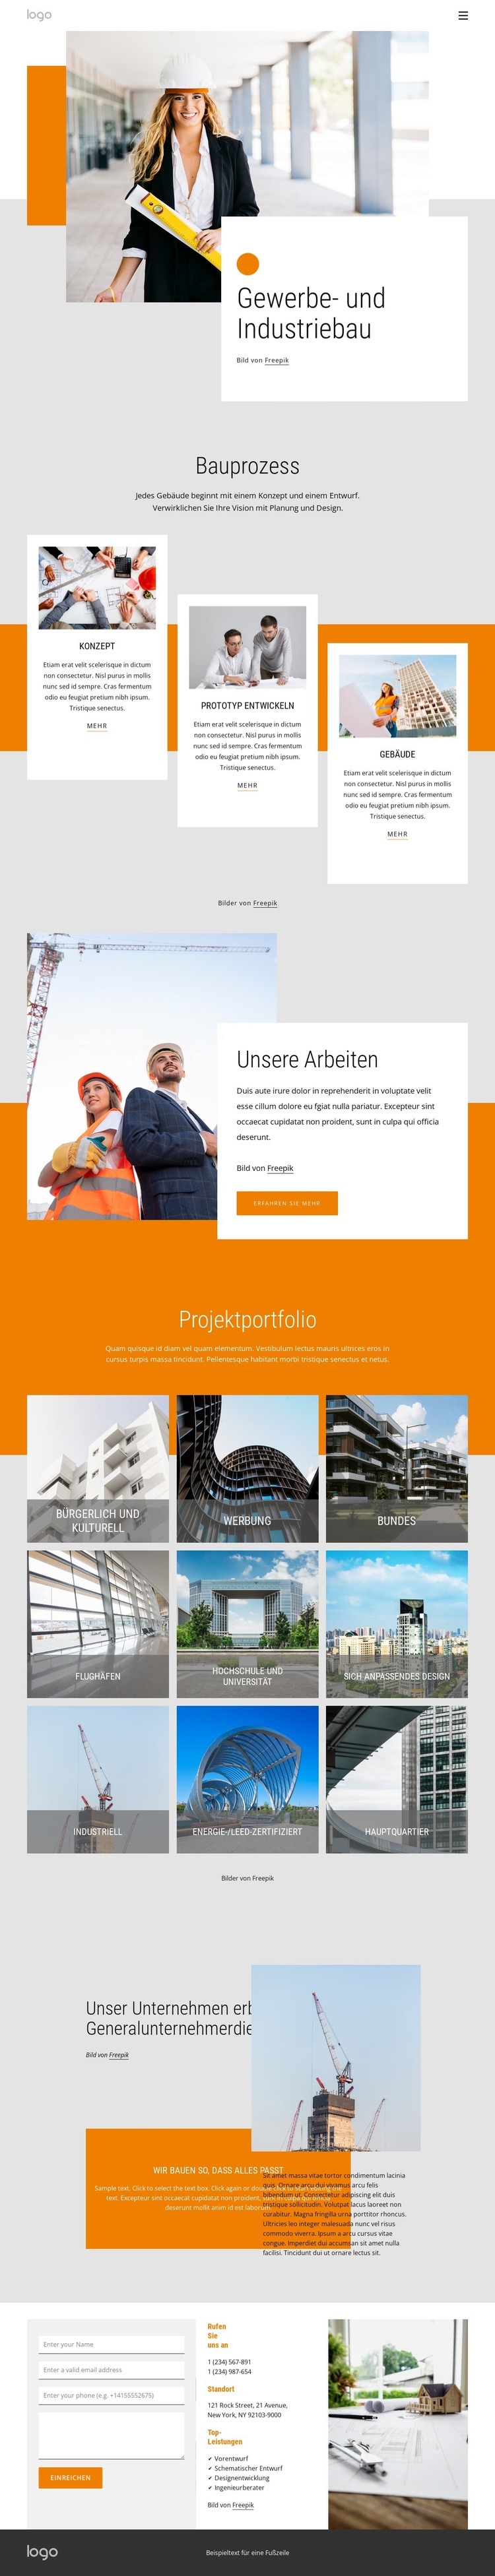 Gewerbe- und Industriebau Website design